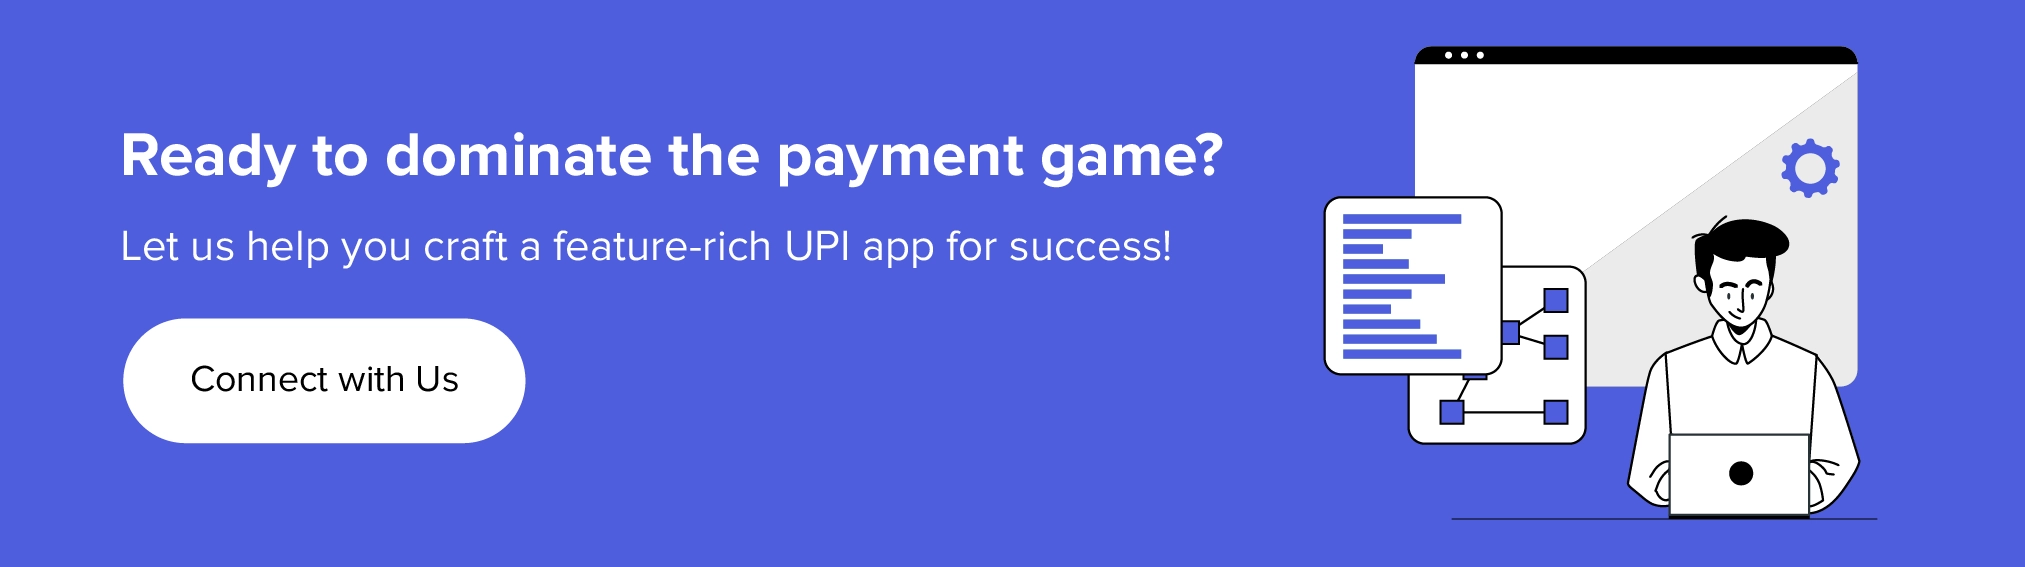 ให้เราช่วยคุณสร้างแอป UPI ที่มีฟีเจอร์หลากหลายเพื่อความสำเร็จ!